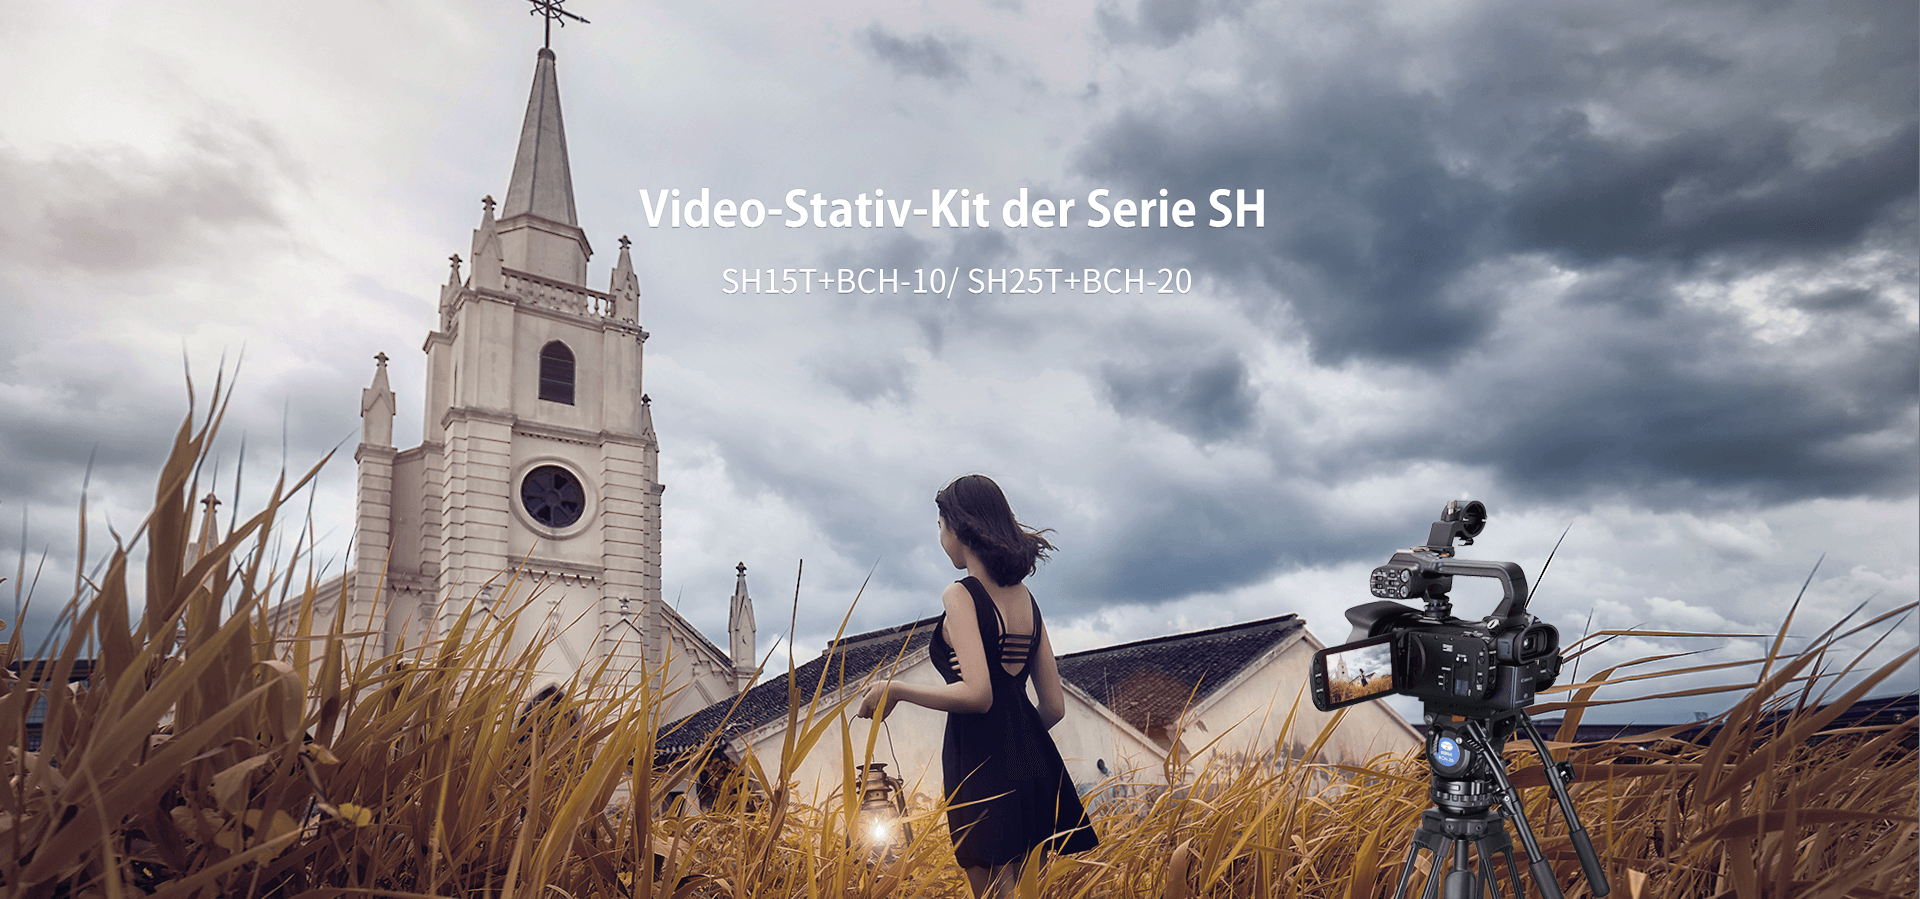 SH Series Video Tripod Kit	Video-Stativ-Kit der Serie SH SH15T+BCH-10/ SH25T+BCH-20	SH15T+BCH-10/ SH25T+BCH-20